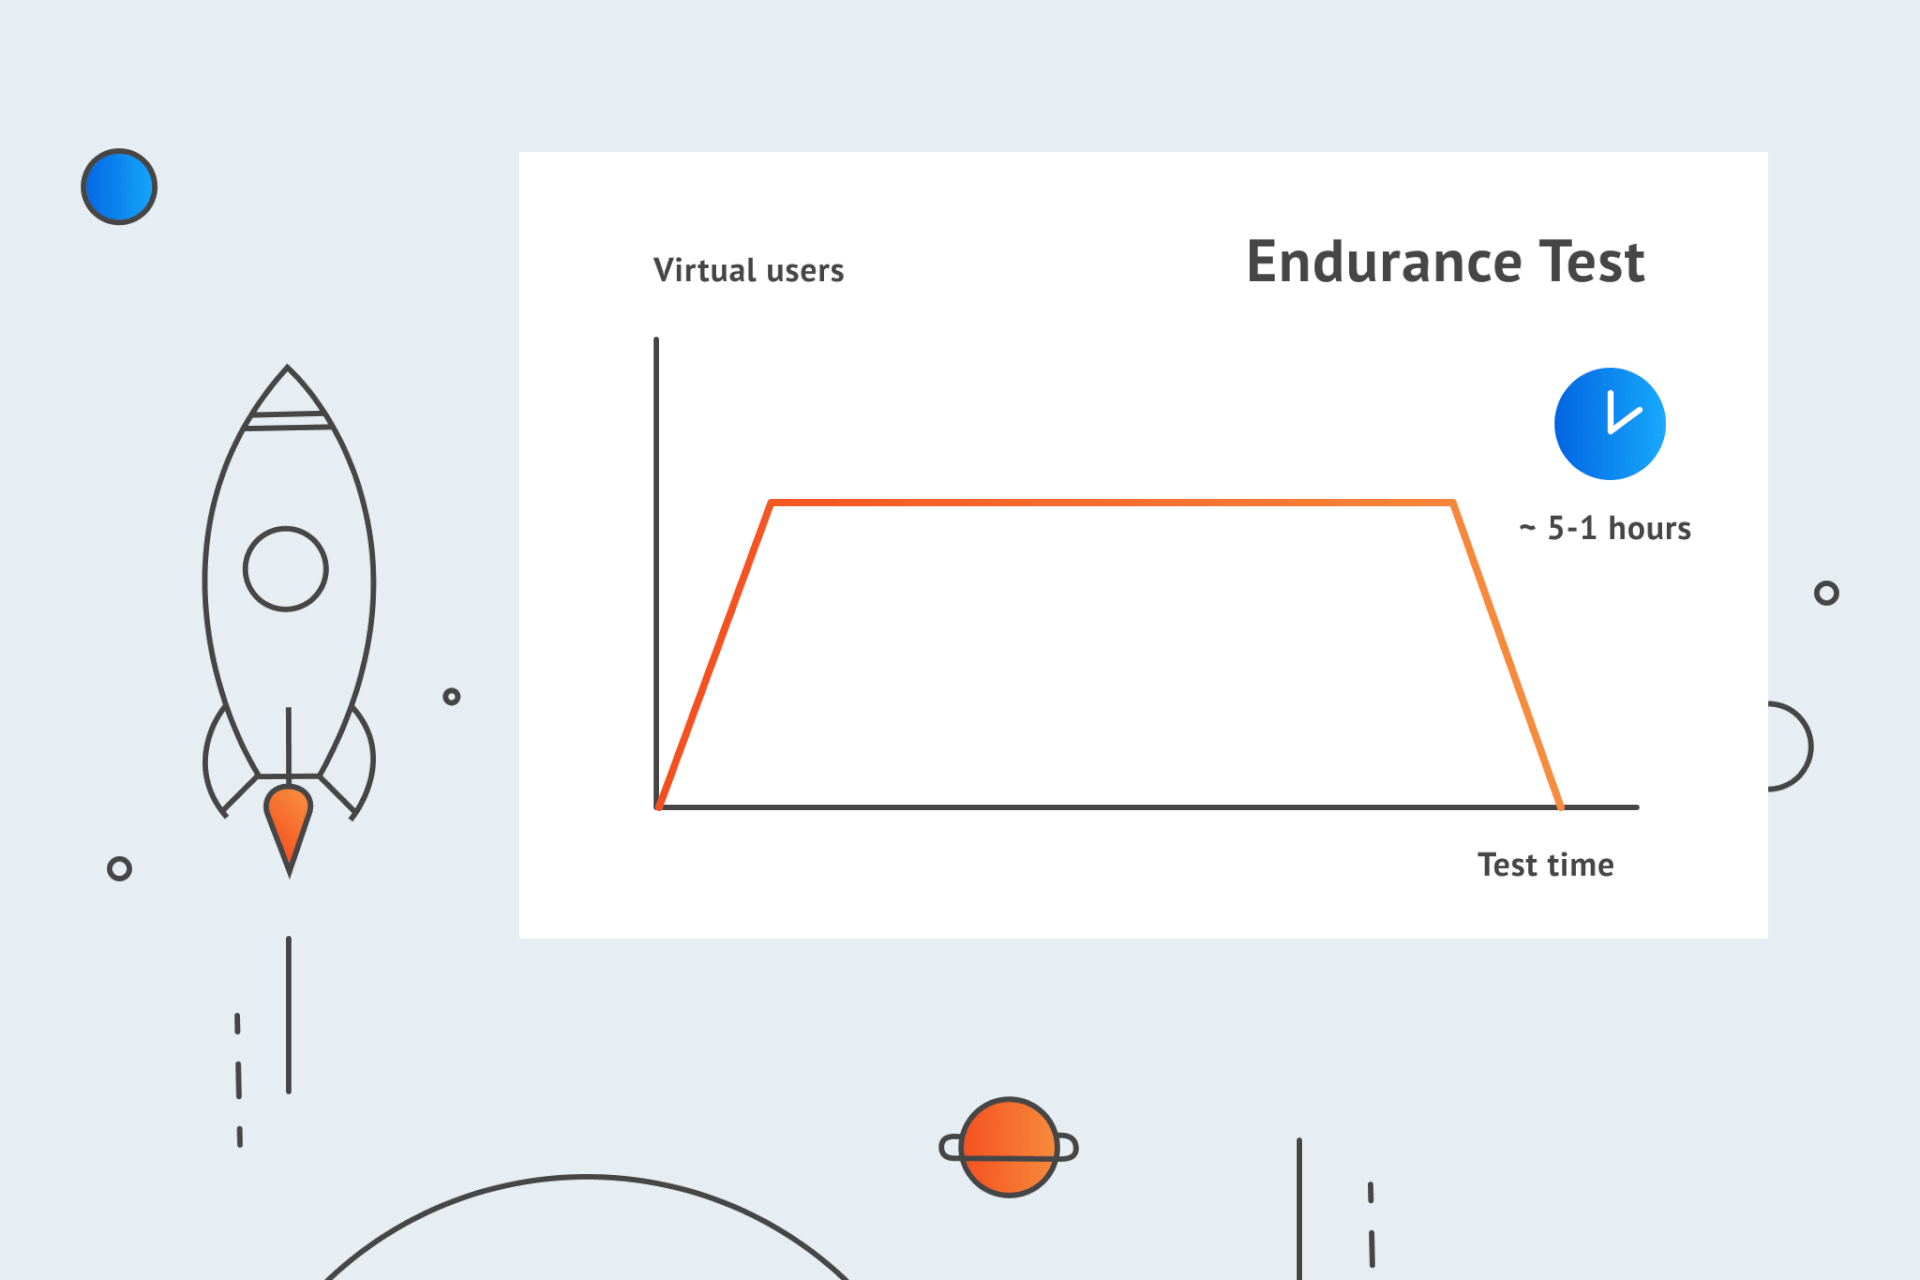 Endurance testing